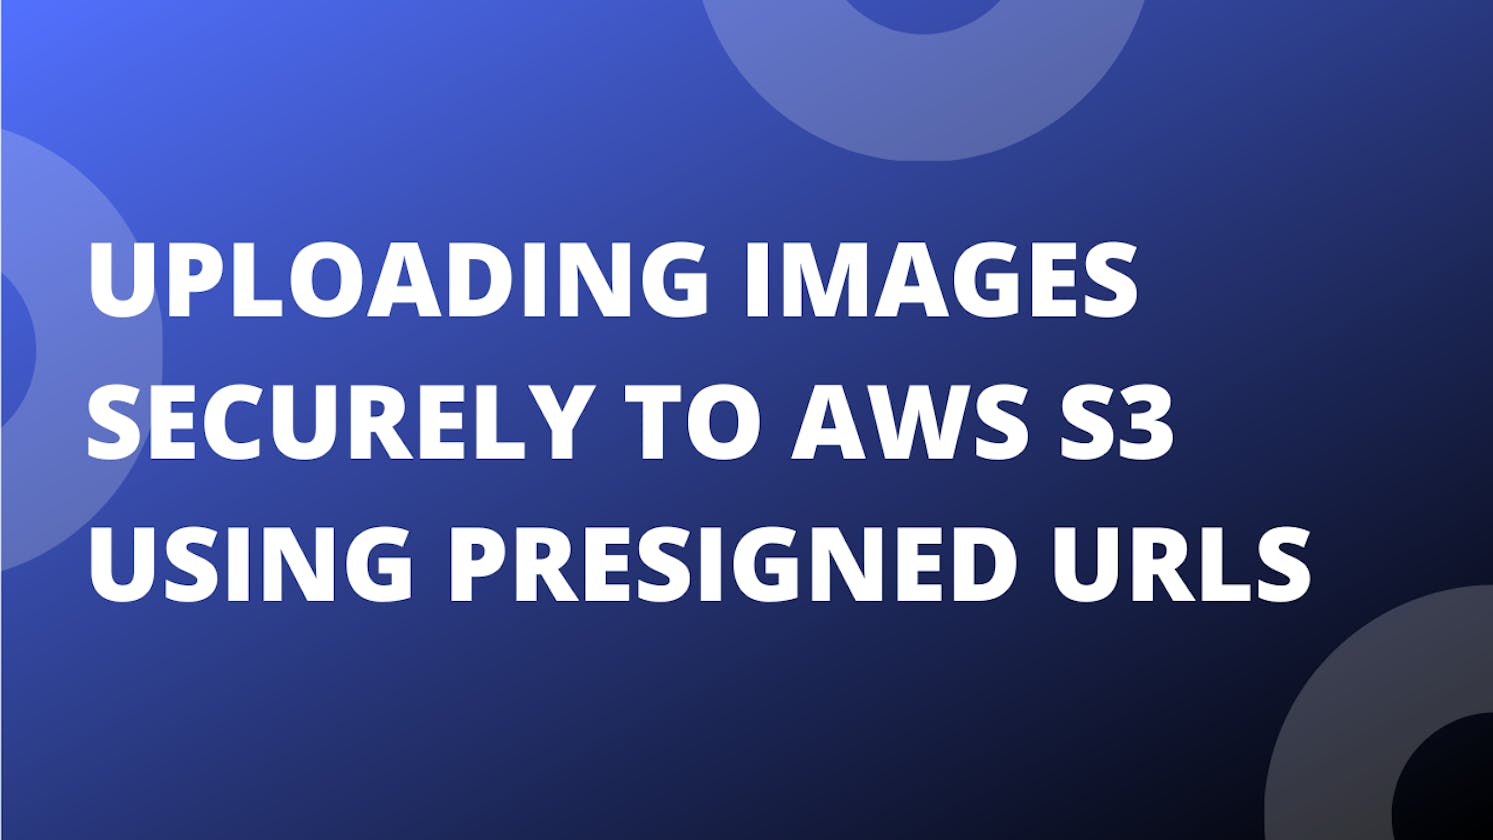 Uploading Images Securely to AWS S3 Using Presigned URLs